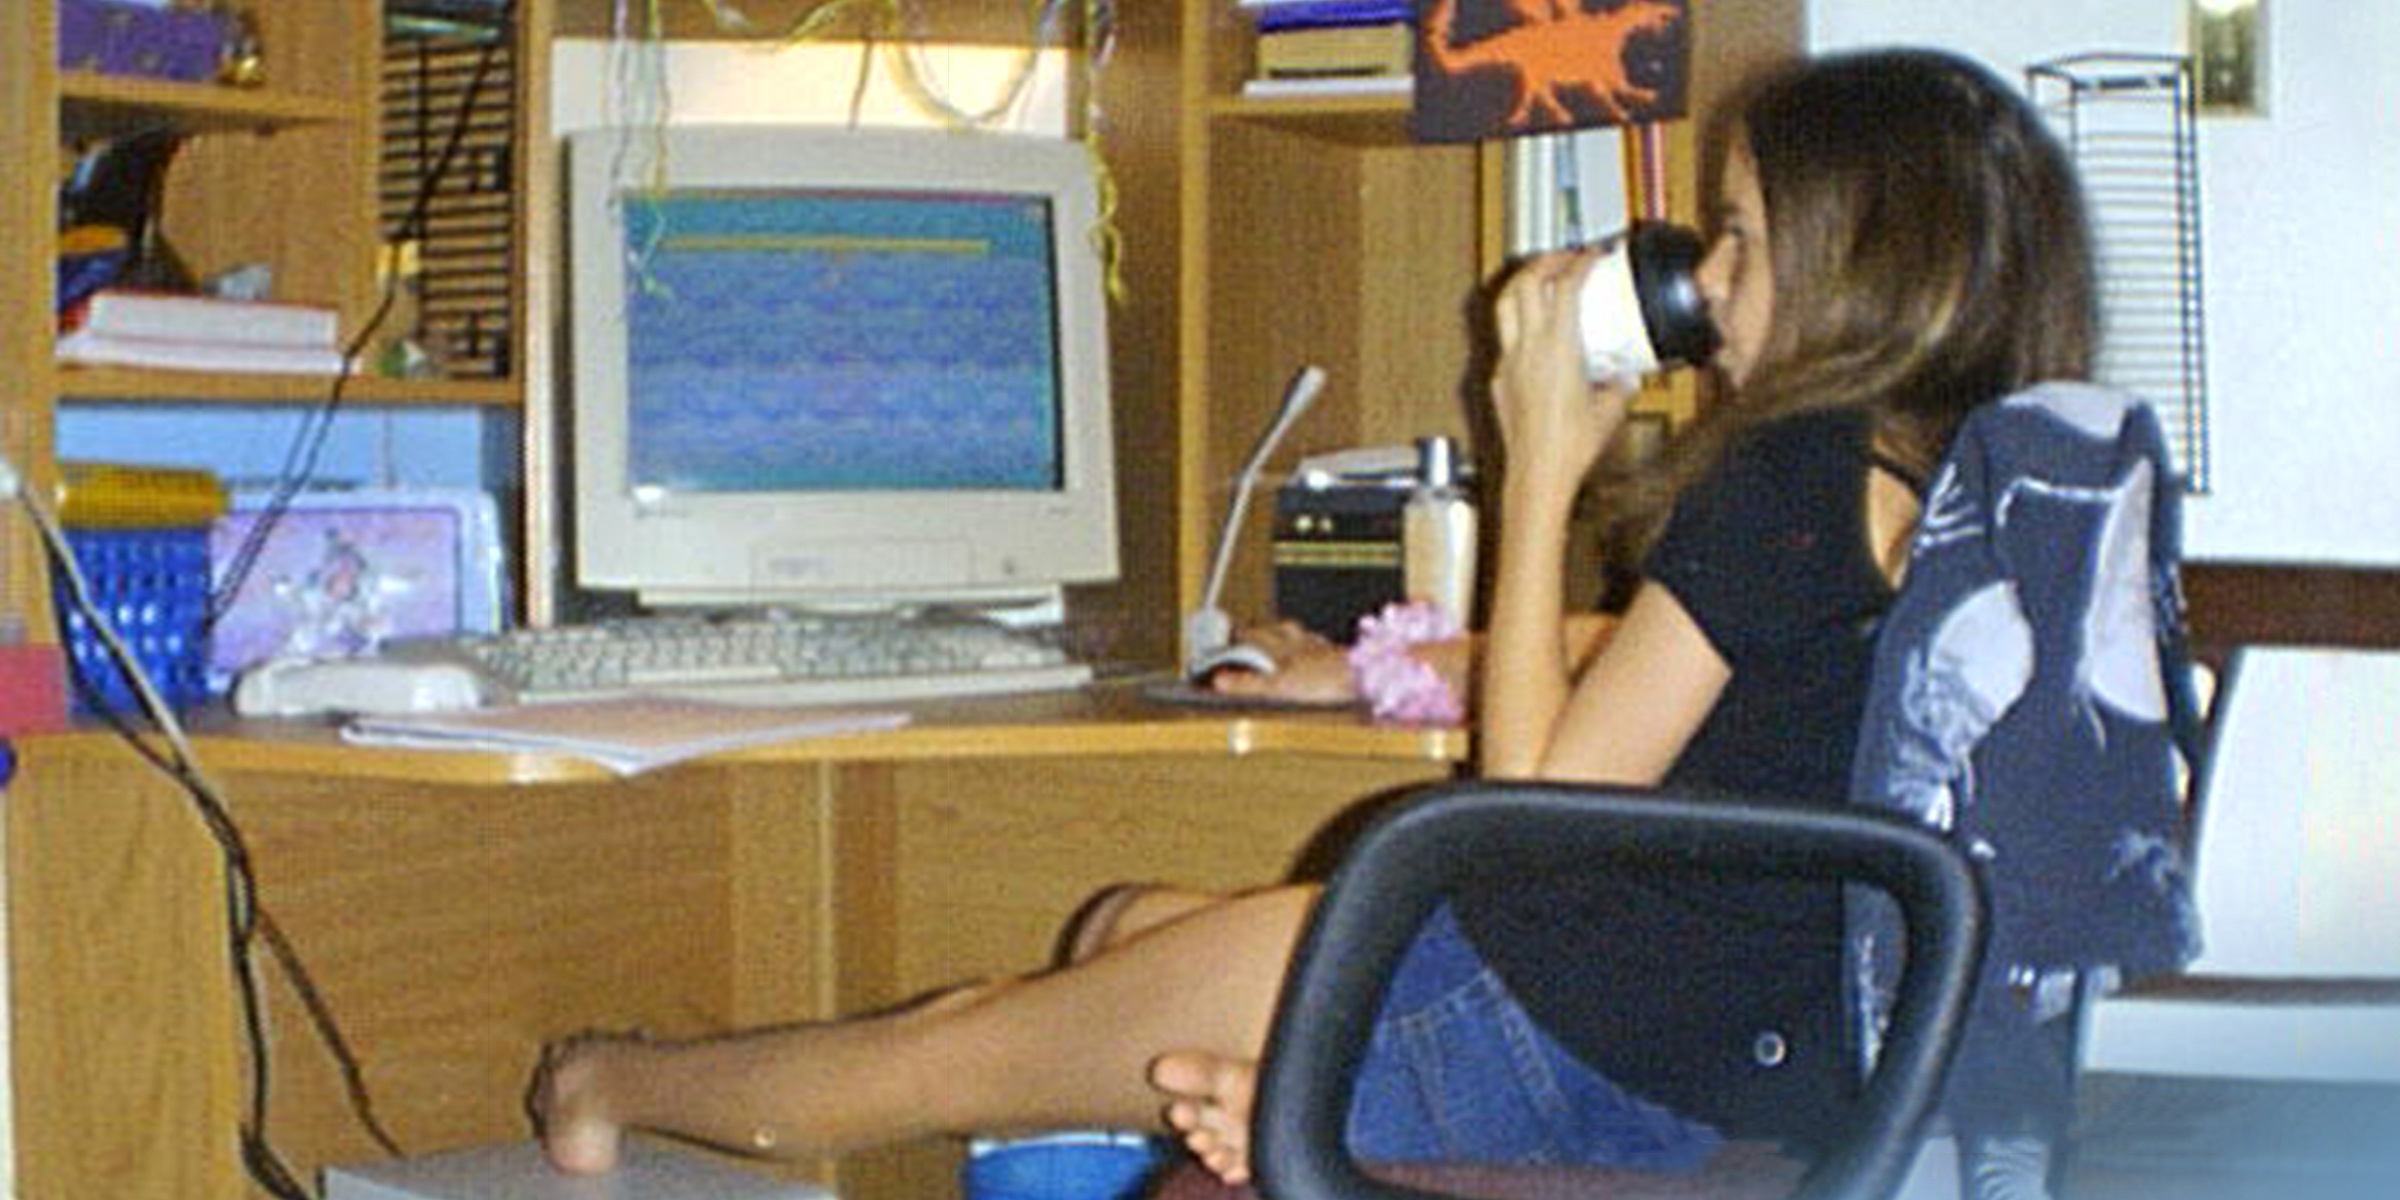 Adolescente en el ordenador | Fuente: Flickr